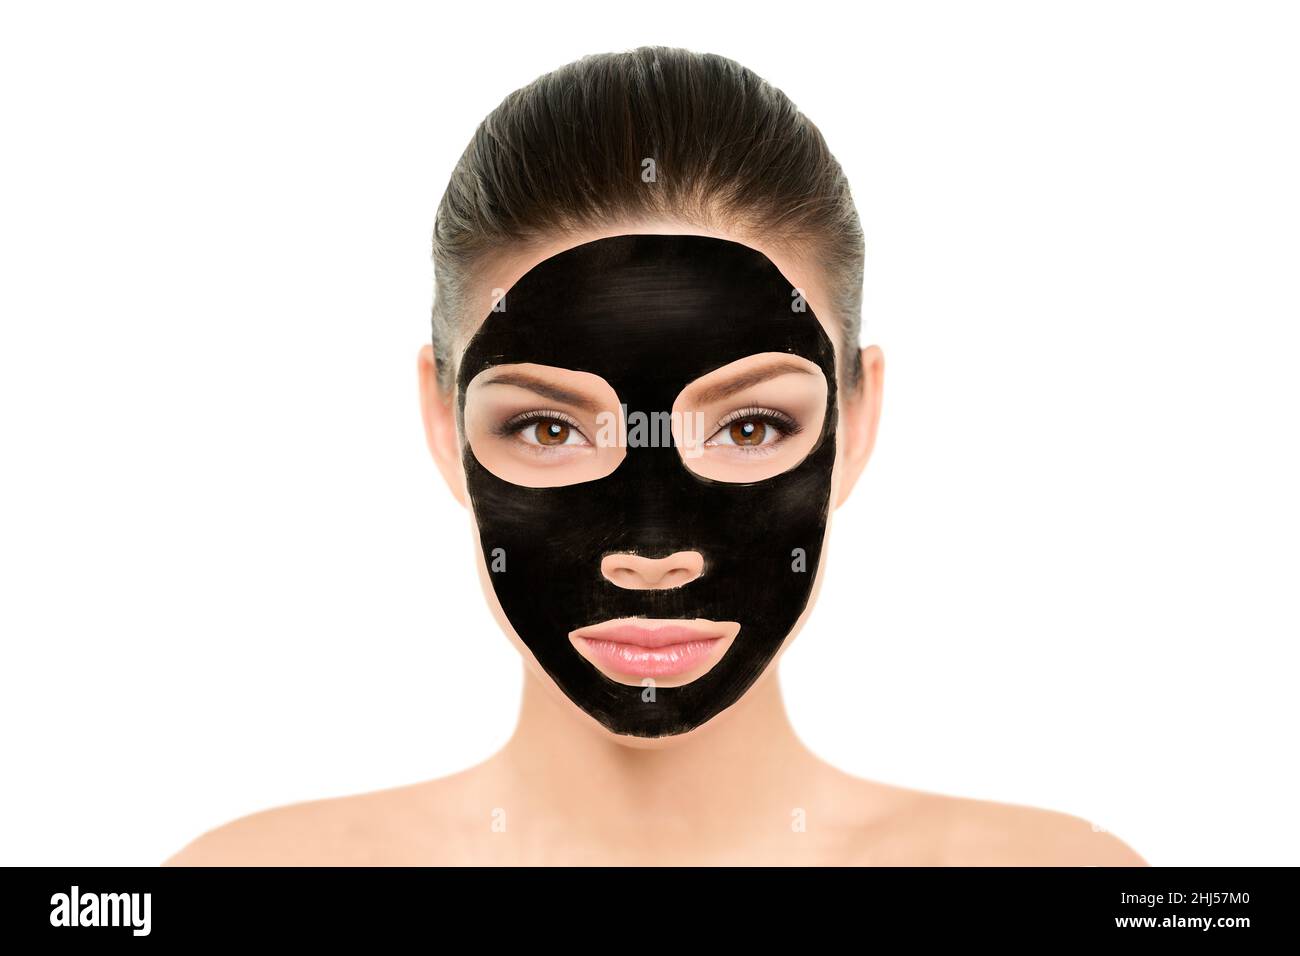 https://c8.alamy.com/compfr/2hj57m0/noir-charbon-masque-traitement-du-visage-asiatique-beaute-femme-bien-etre-et-spa-purifiant-pelage-masque-visage-portrait-isole-sur-fond-blanc-2hj57m0.jpg